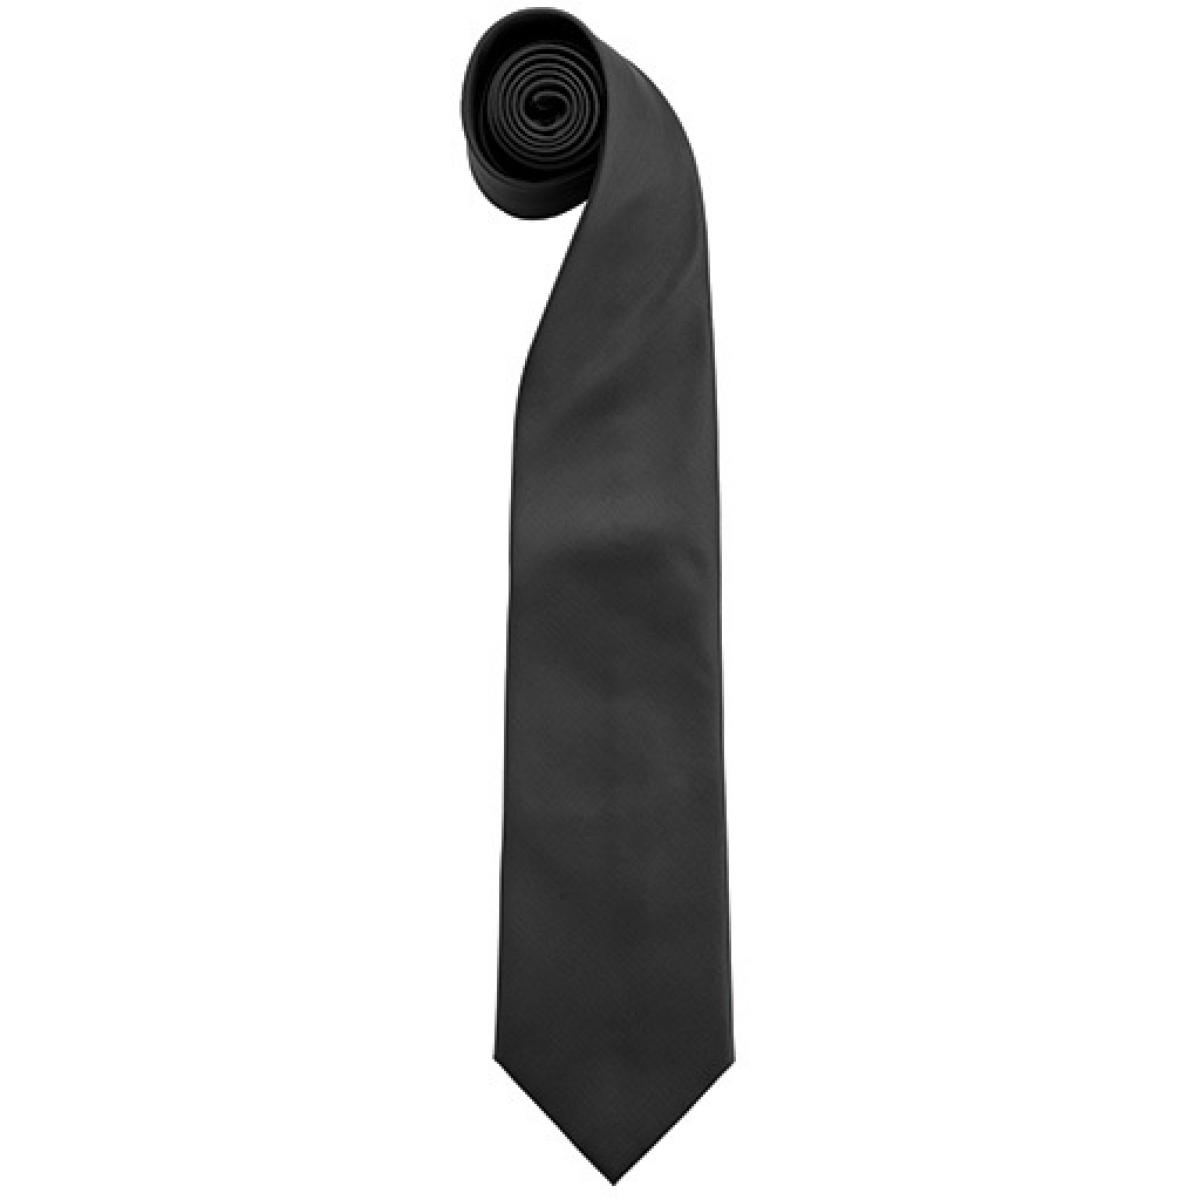 Hersteller: Premier Workwear Herstellernummer: PR765 Artikelbezeichnung: Krawatte Uni-Fashion / Colours Farbe: Black